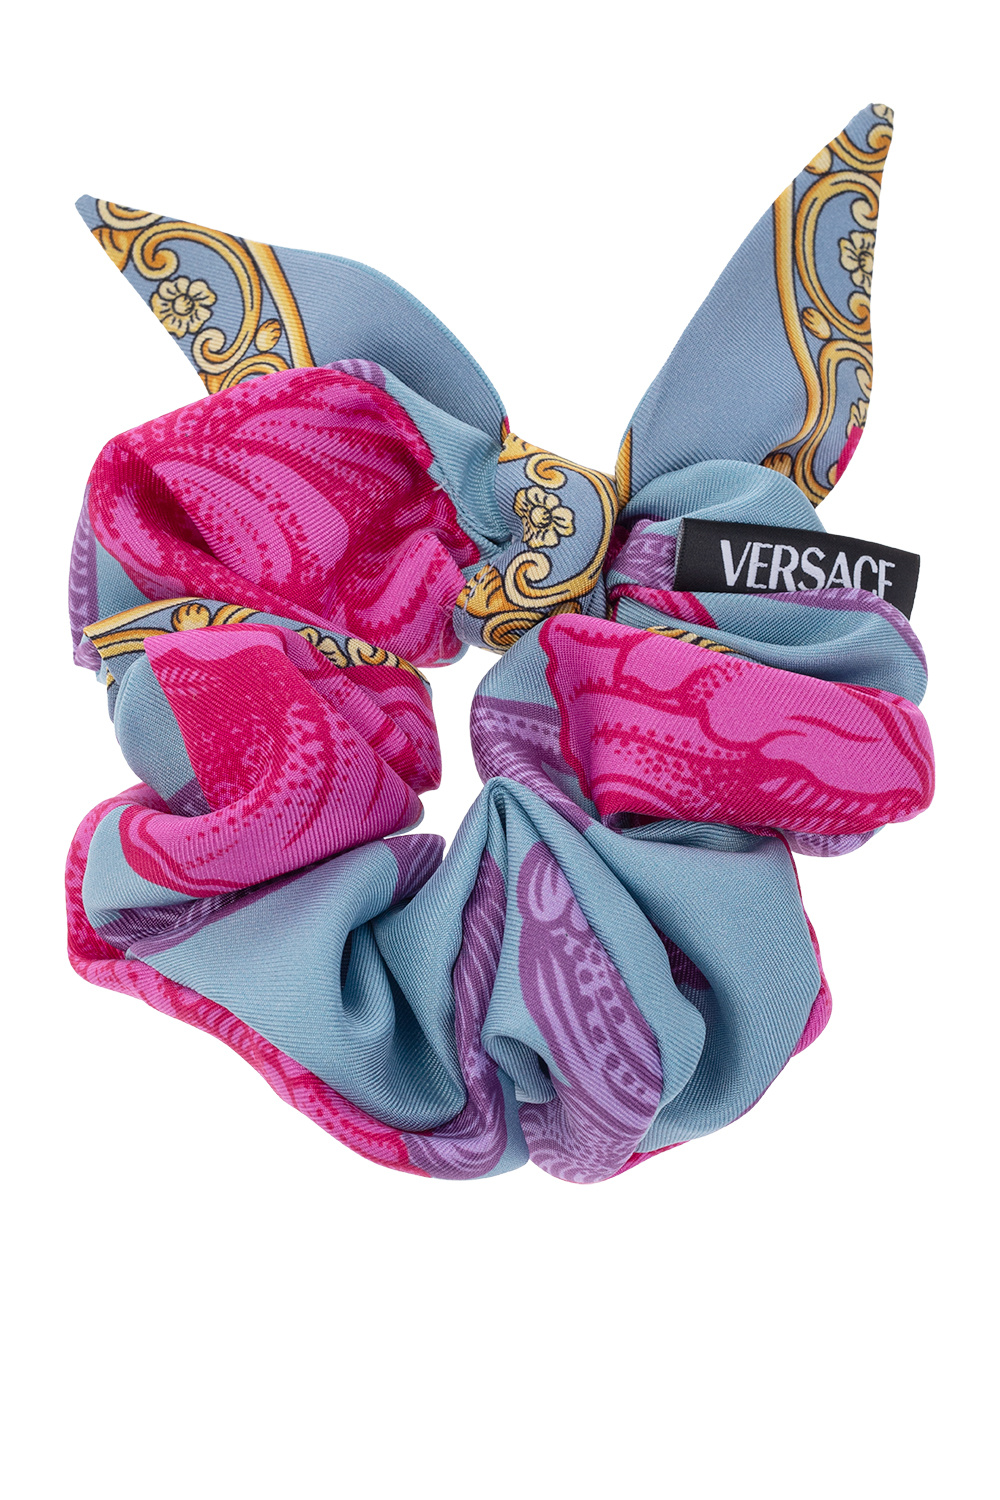 Versace Silk scrunchie